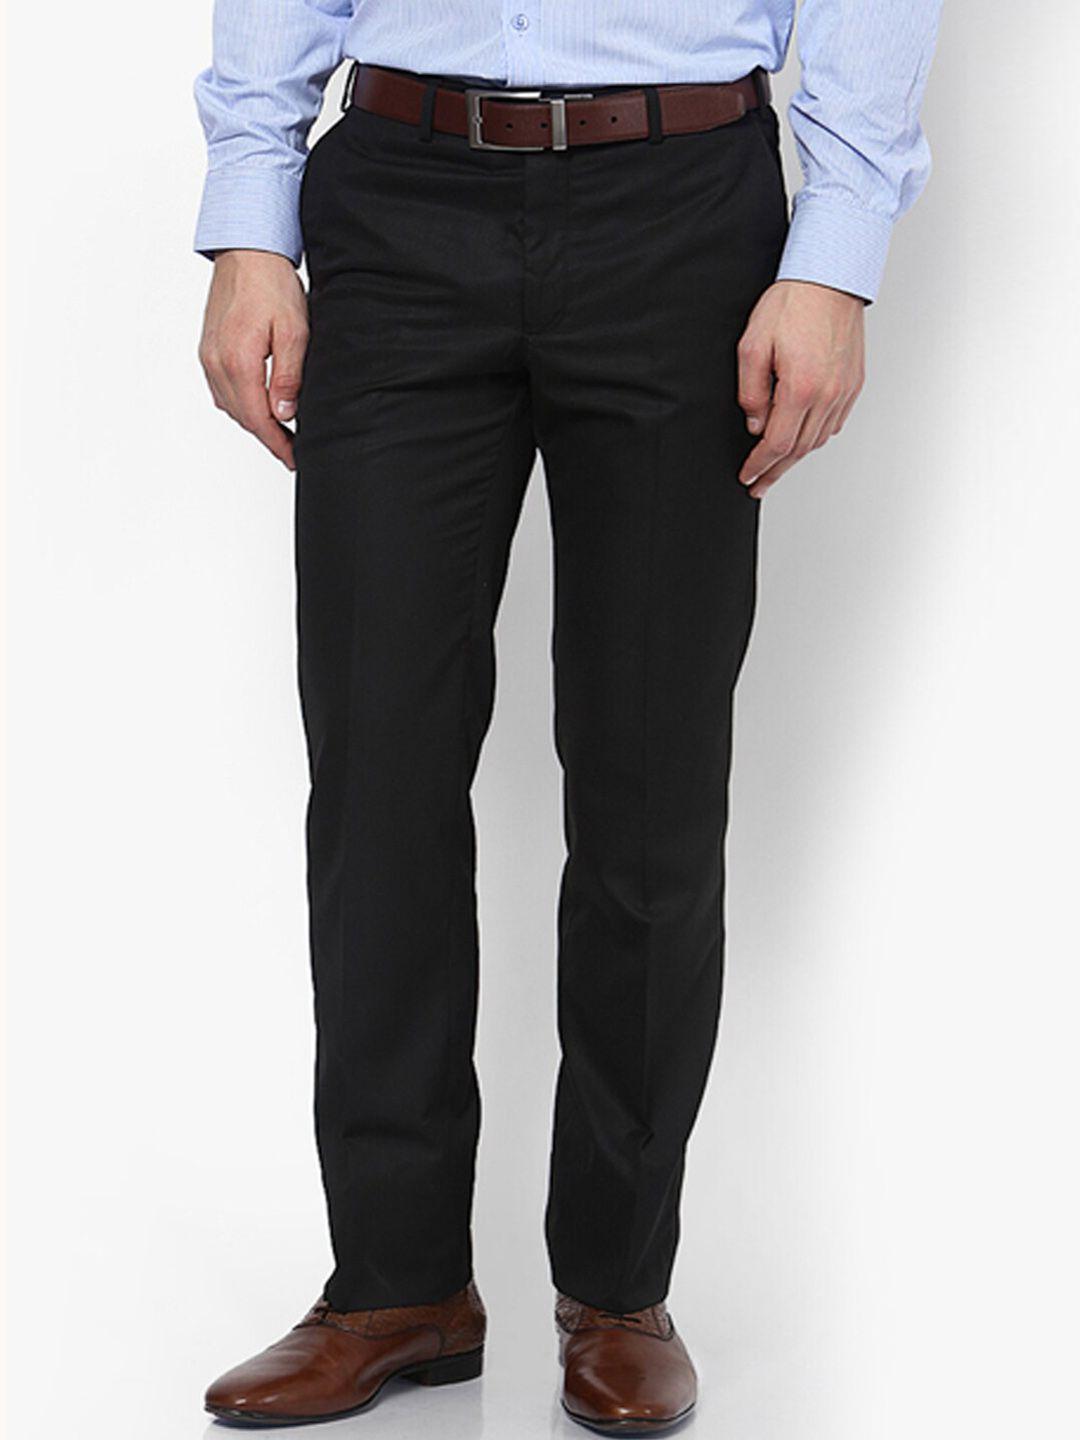 ad & av men black formal classic easy wash trousers